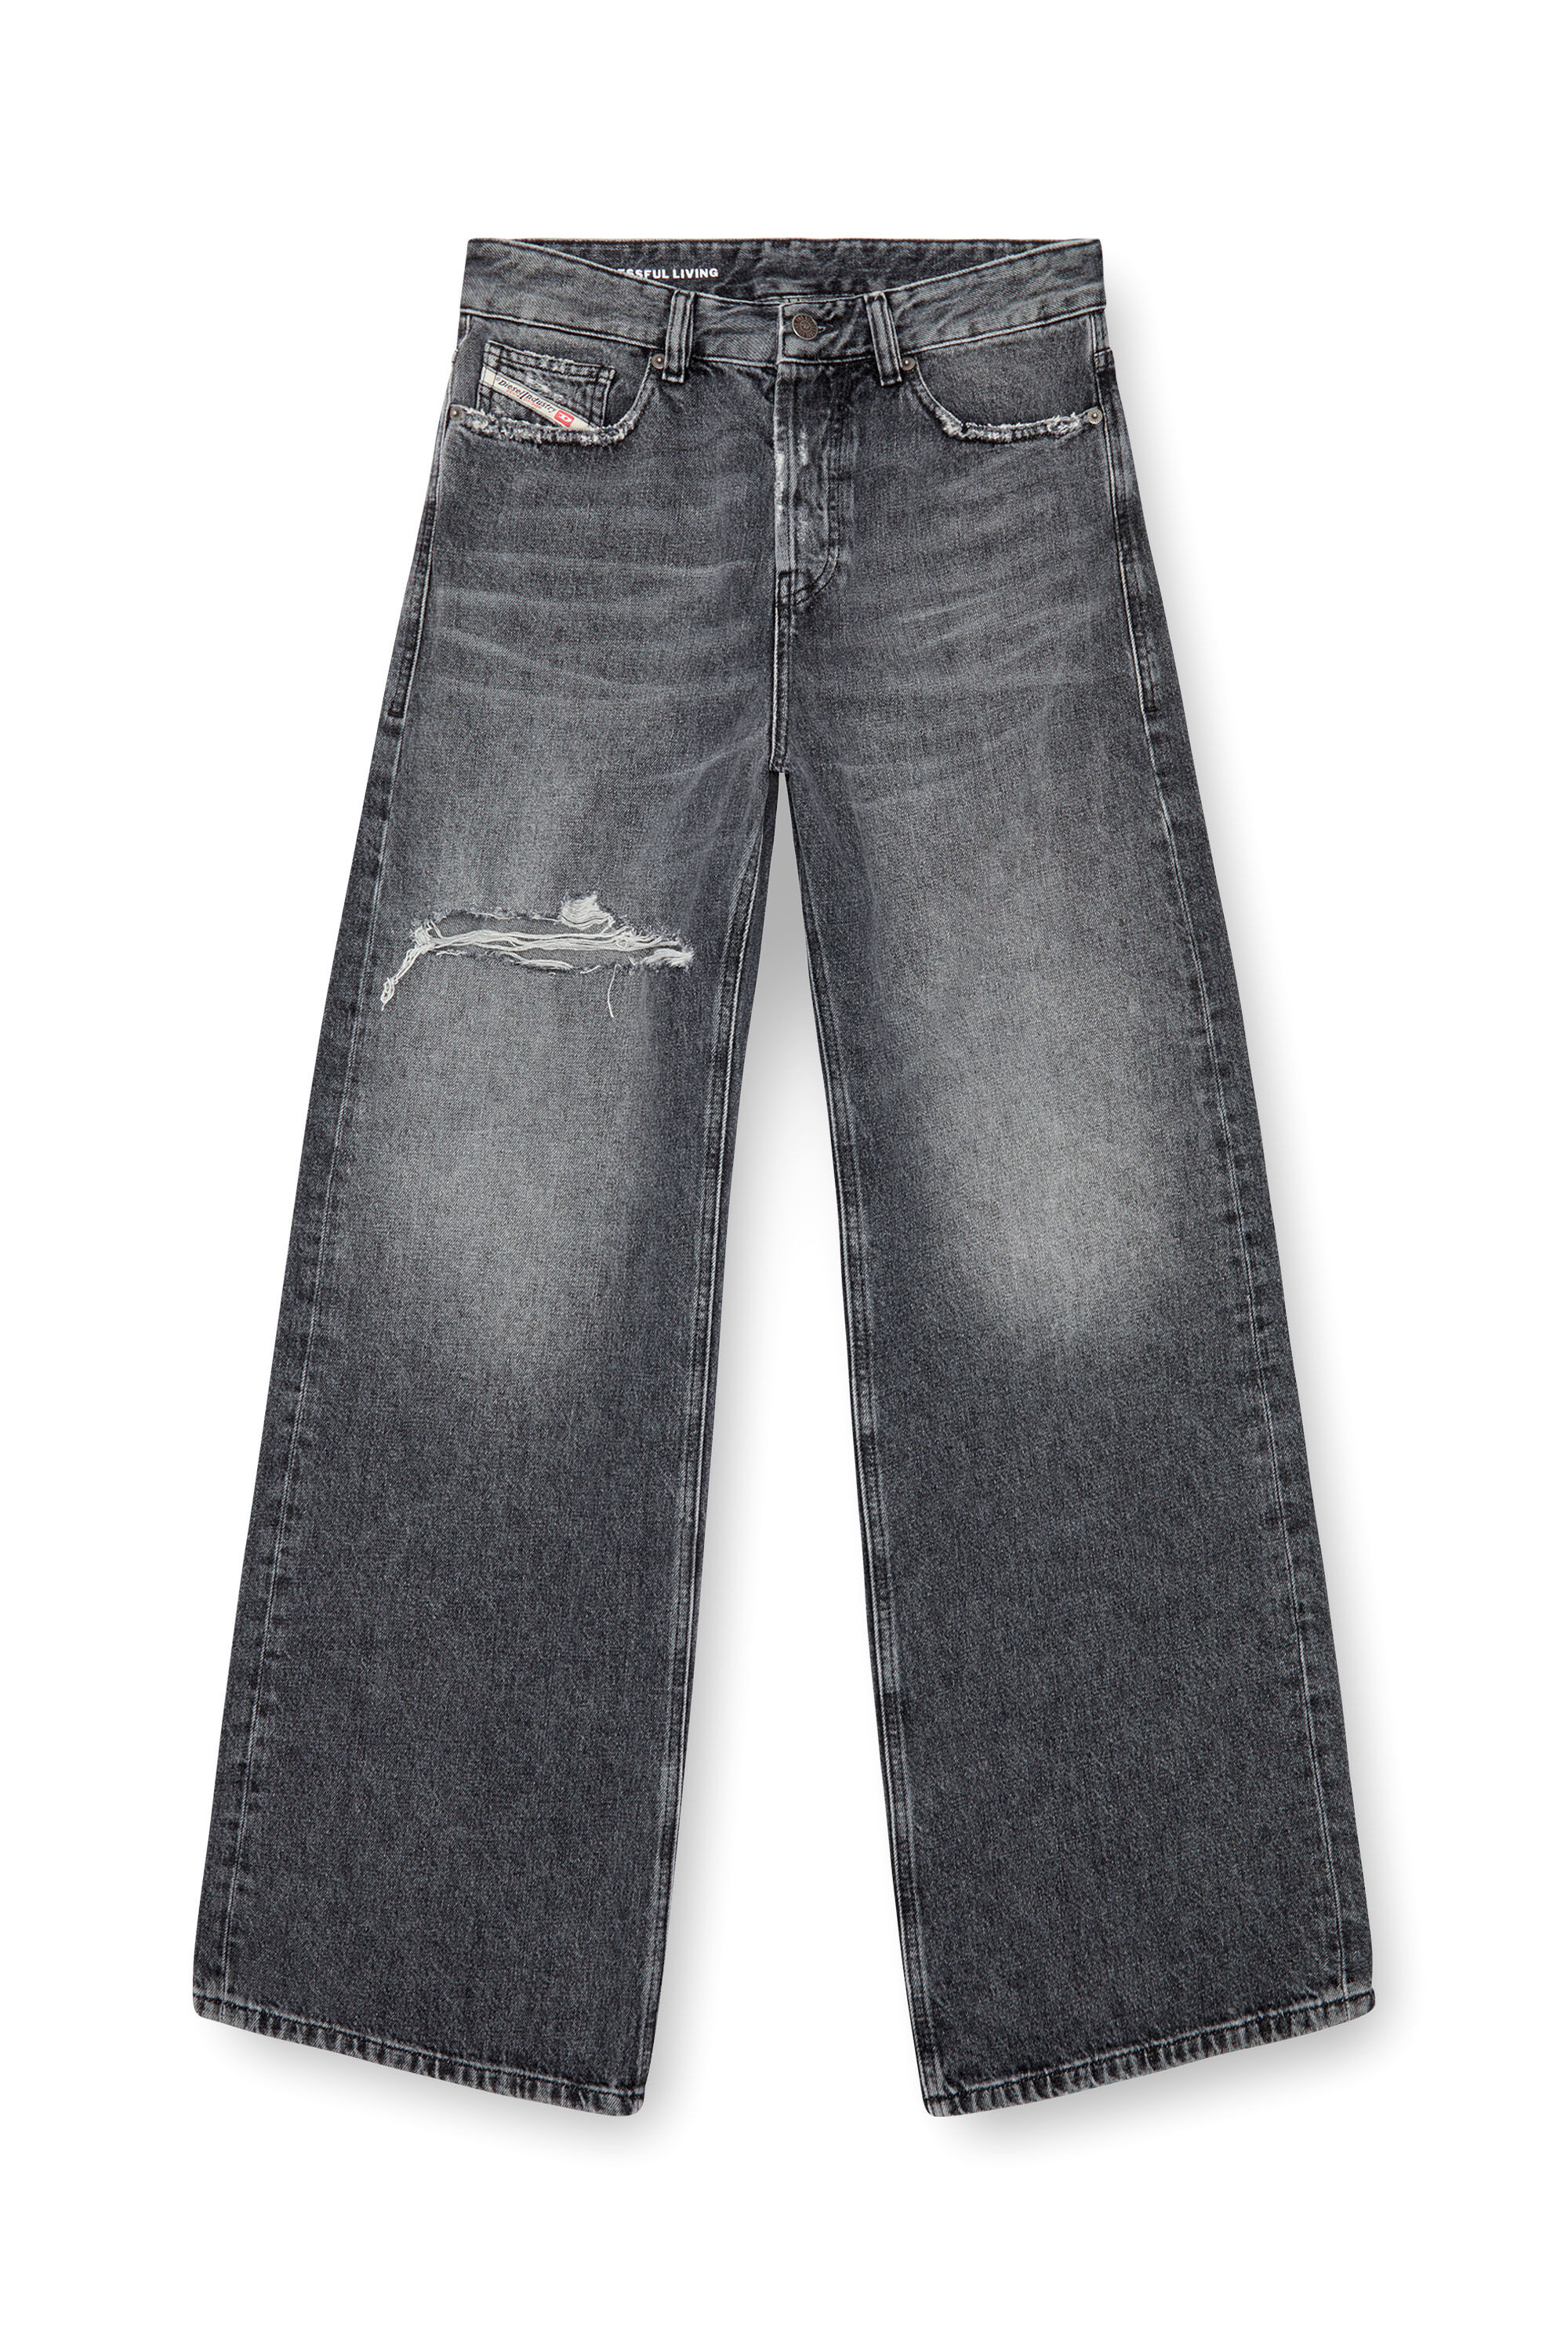 Diesel - Femme Straight Jeans 1996 D-Sire 007X4, Noir/Gris foncé - Image 2